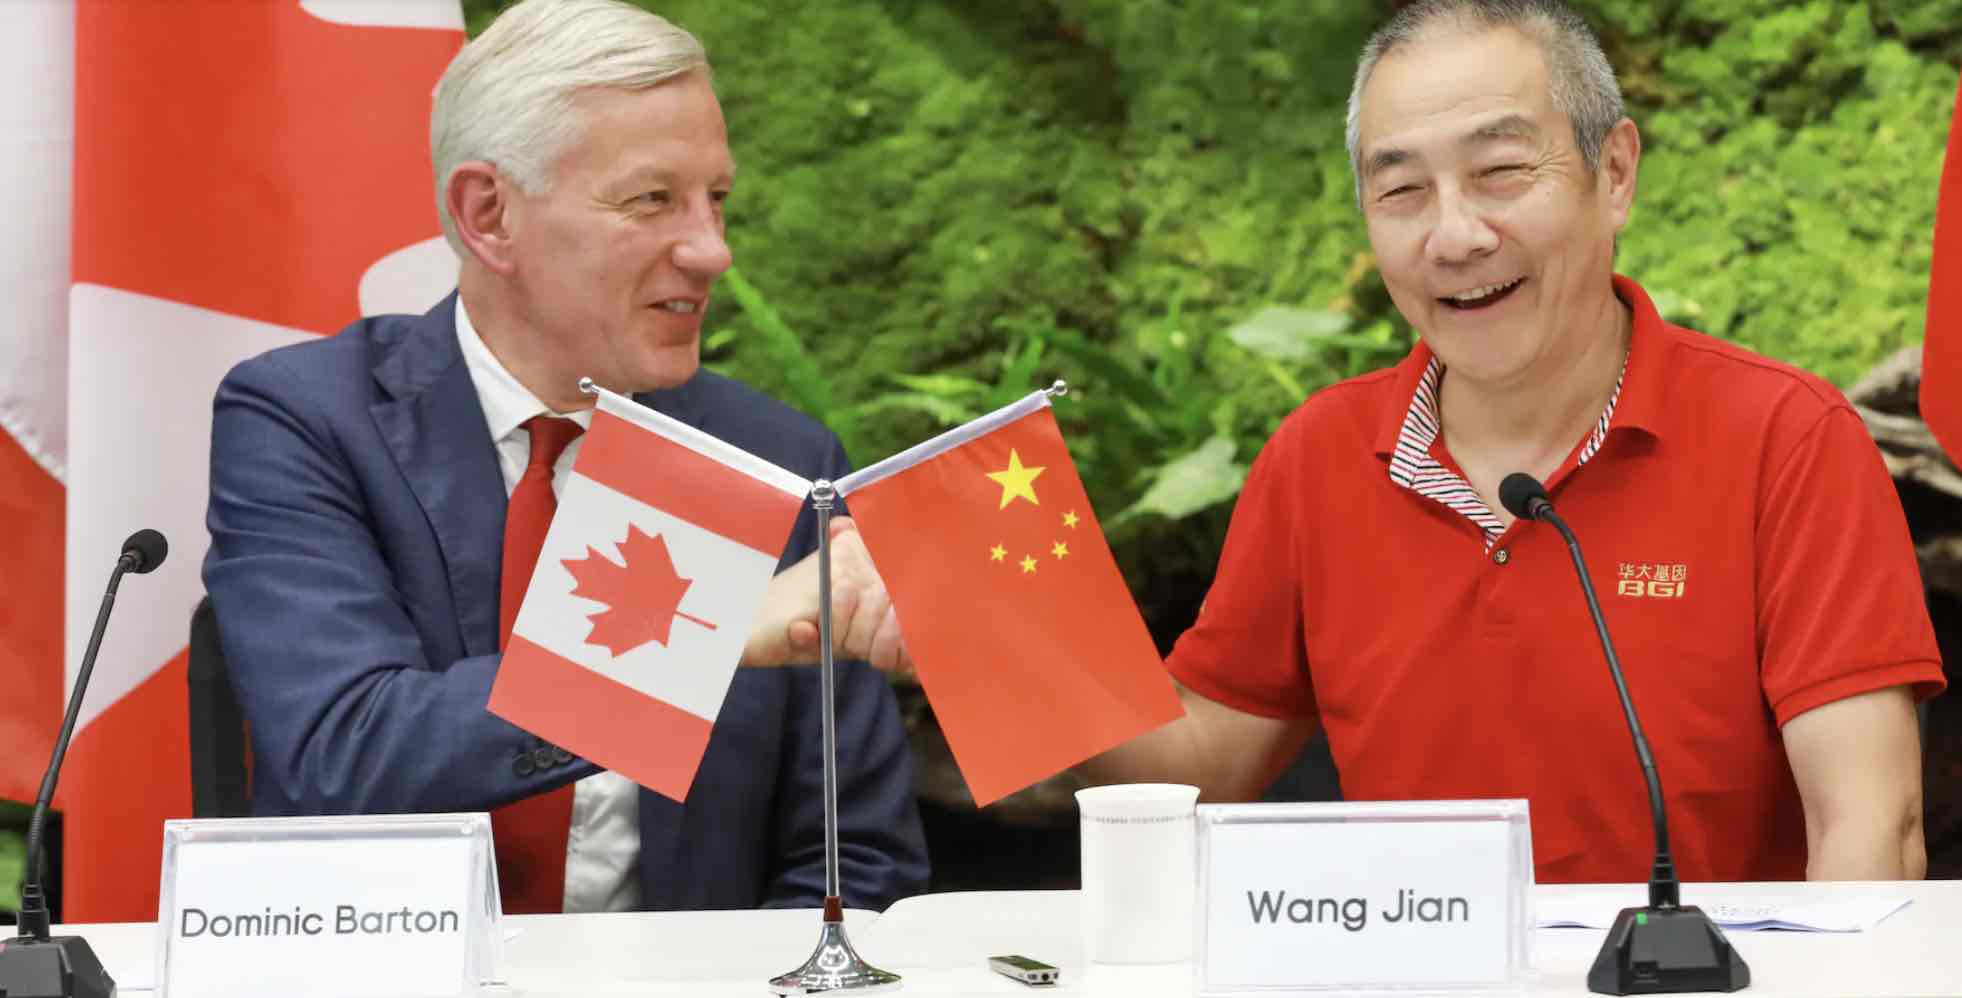 L’ambassadeur du Canada en Chine, Dominic Barton, et le président de BGI Group, Wang Jian, lors d’une cérémonie à Shenzhen, le 13 mai 2020.<br />PHOTO : GLOBAL TIMES